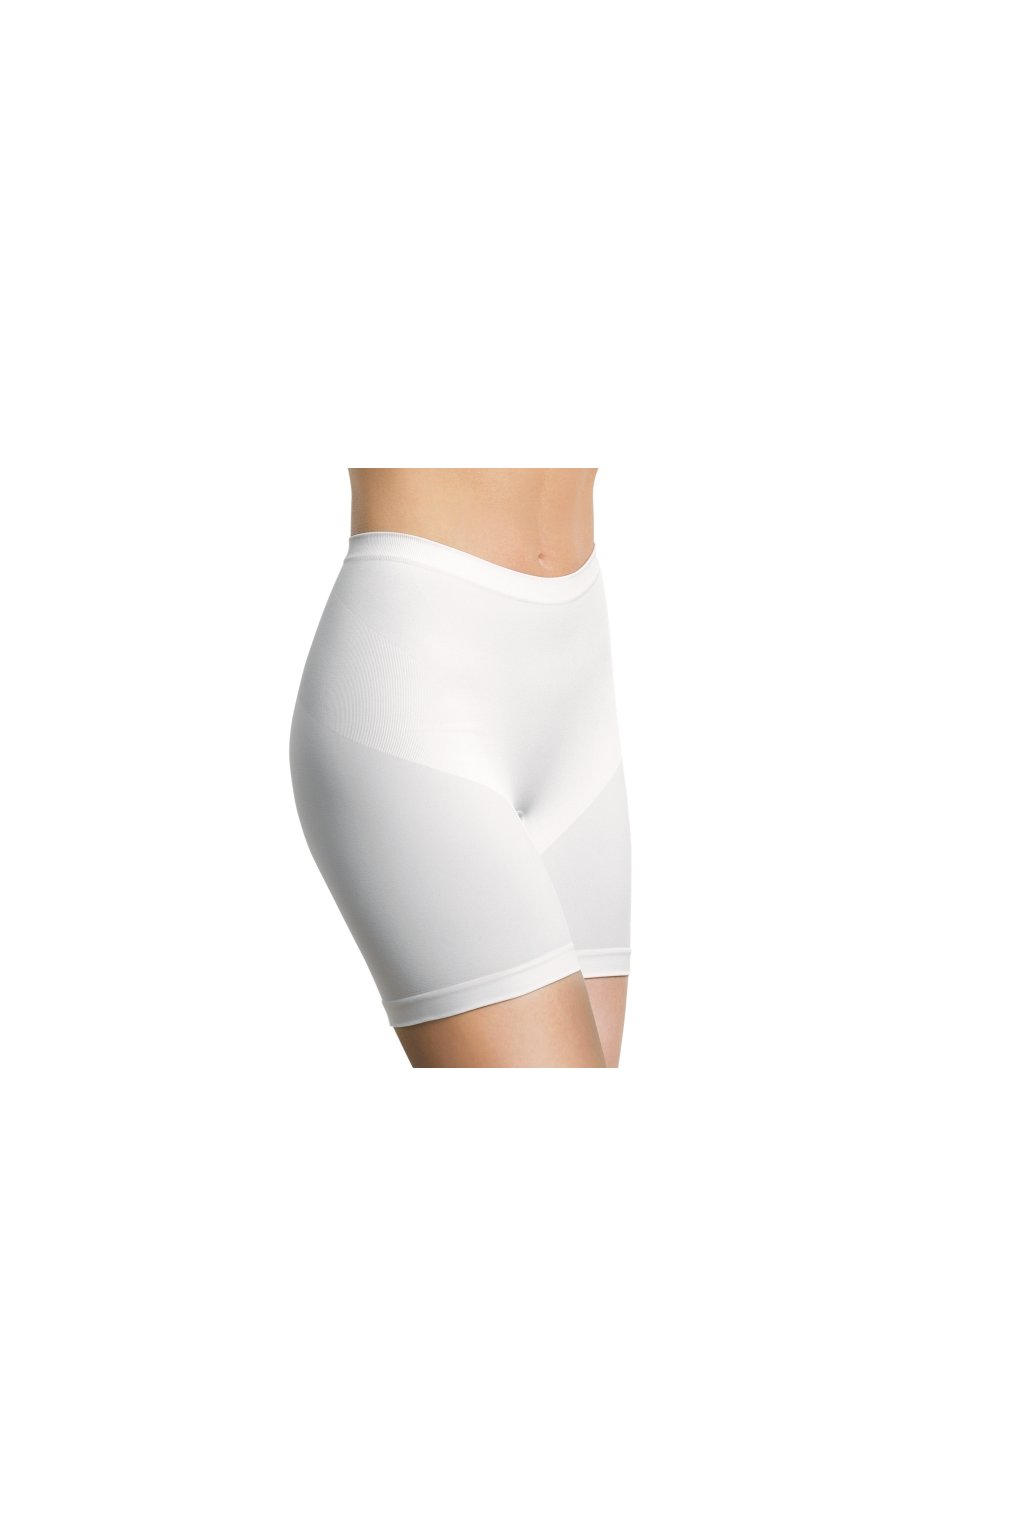 Kalhotky stahovací nohavičkové bezešvé Short Silhouette Intimidea (Barva Tělová, Velikost S/M)